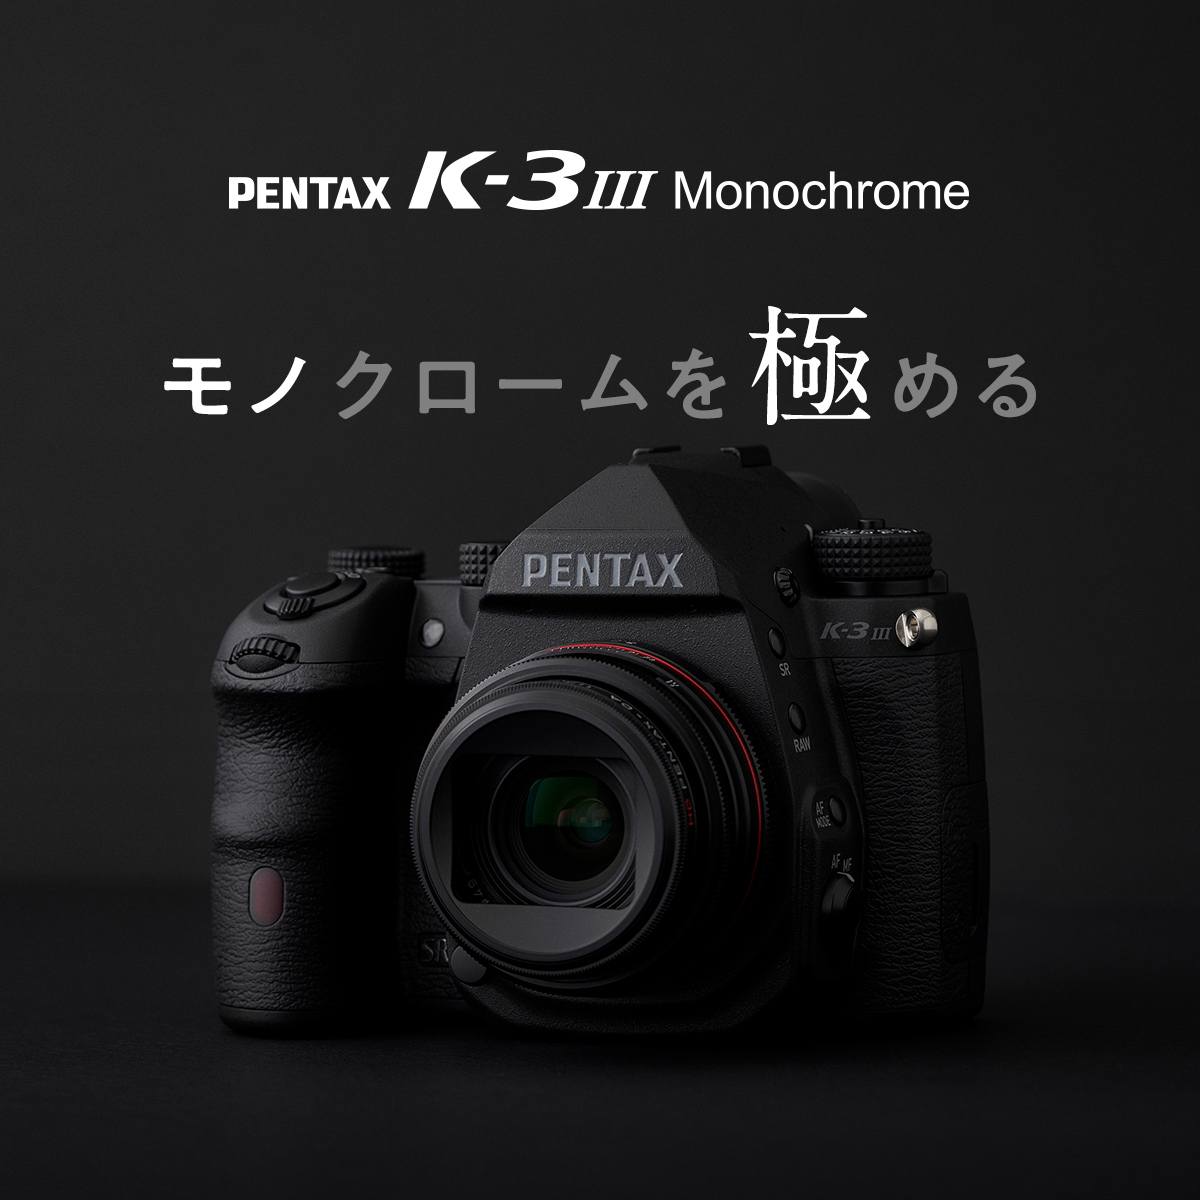 特集ページ / PENTAX K-3 Mark III Monochrome / 製品 | RICOH IMAGING